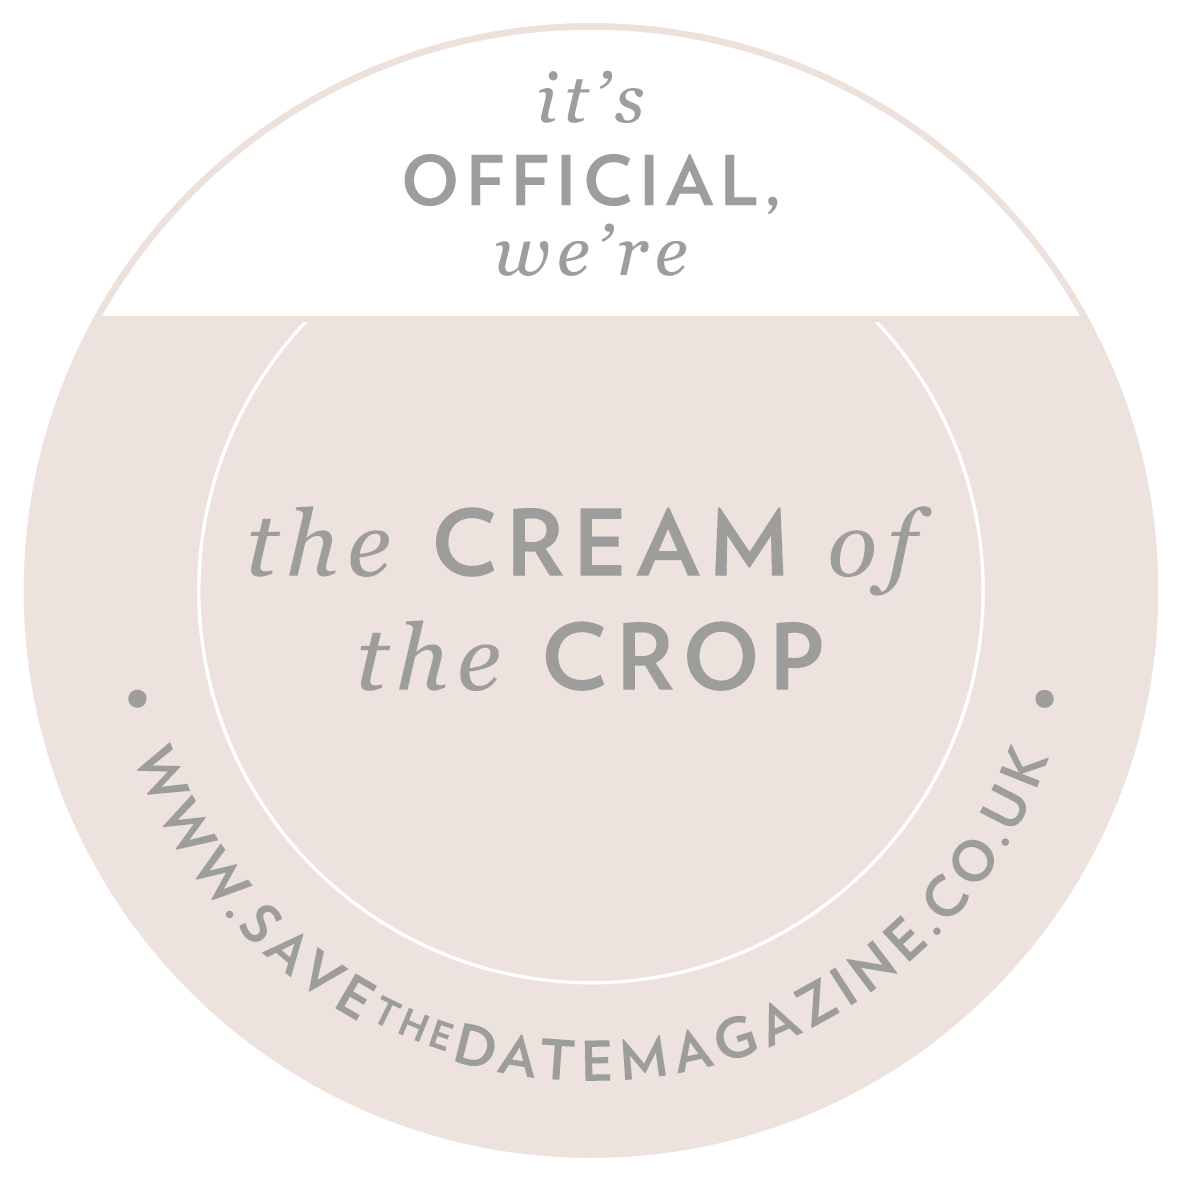 we're+cream+crop@300x.png